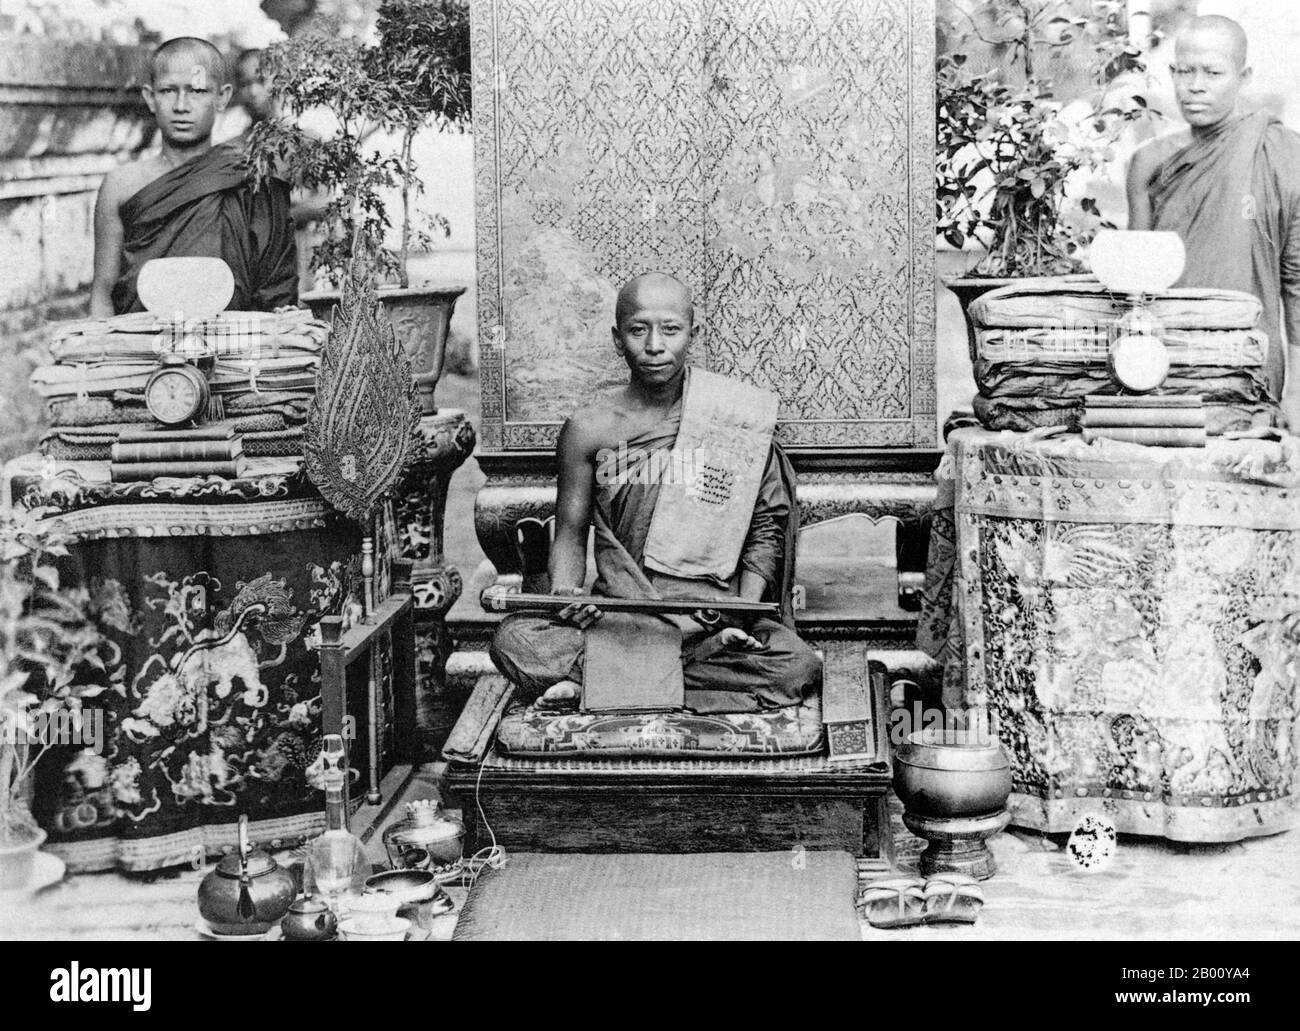 Cambogia: I monaci buddisti Khmer prendono parte ad una cerimonia di Kathin a Phnom Penh in 1925. La cerimonia di Kathin è uno dei principali festival di merito in Thailandia, Cambogia e Laos. La cerimonia consiste nell'offrire nuovi abiti ai monaci che vivono nei templi buddisti. Il nome completo di questo festival è 'Thot Kathin'. Il significato della parola 'Thot' è di fare un'offerta ad un monaco, e la parola 'Kathin' indica un telaio di ricamo. La cerimonia di Kathin si svolge alla fine della stagione delle piogge nel mese di settembre, quando i laici offrono vestiti, soldi, attrezzature da cucina e altri strumenti ai monaci. Foto Stock